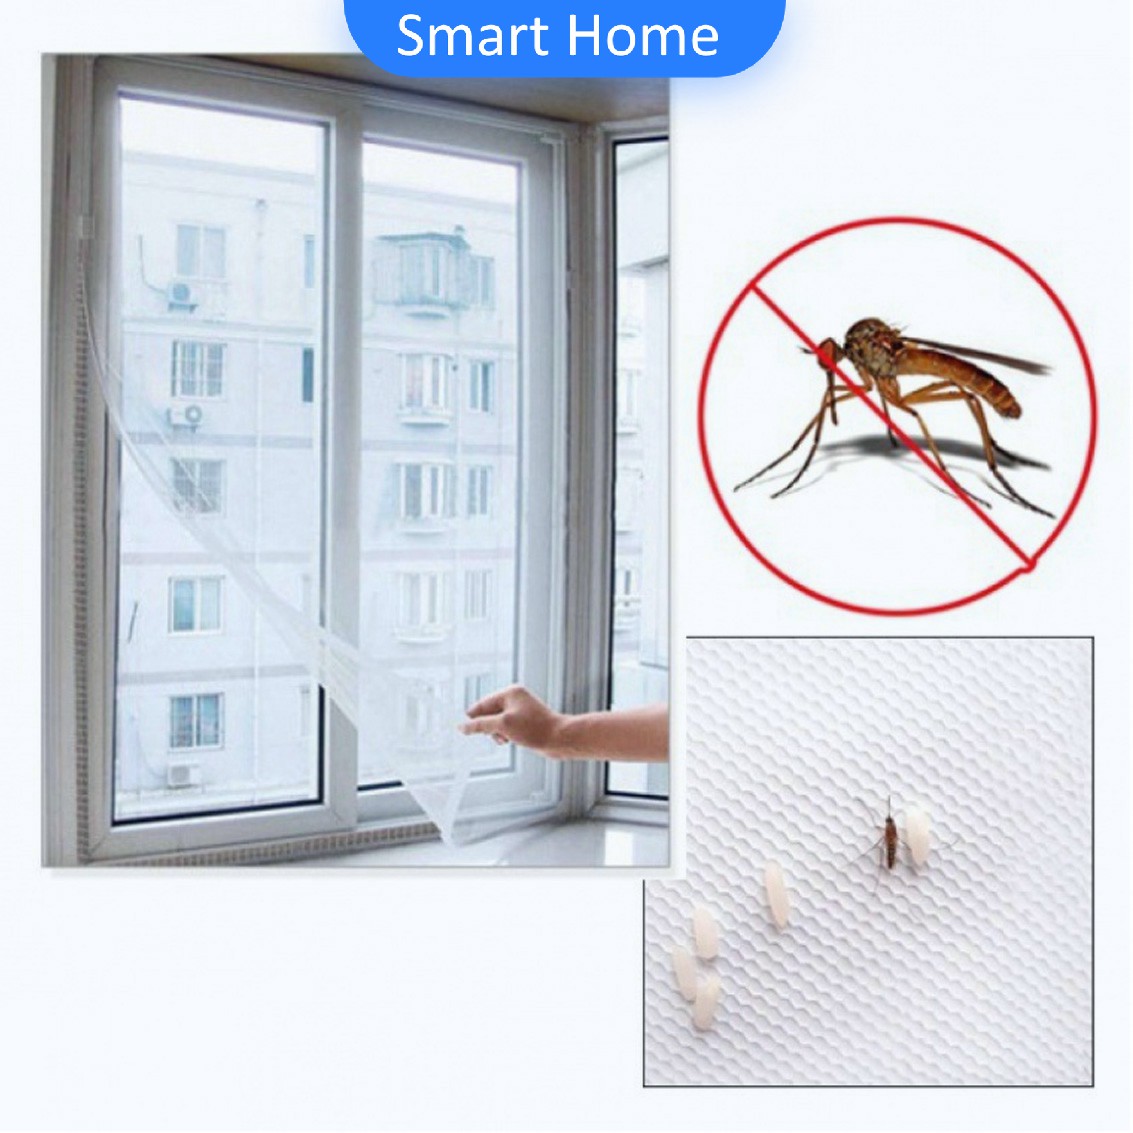 ม่าน หน้าต่าง มุ้งตาข่าย สีขาว ป้องกันยุงและแมลง คุณสามารถติดเองได้ง่าย อุปกรณ์กันแมลง Mosquito screen